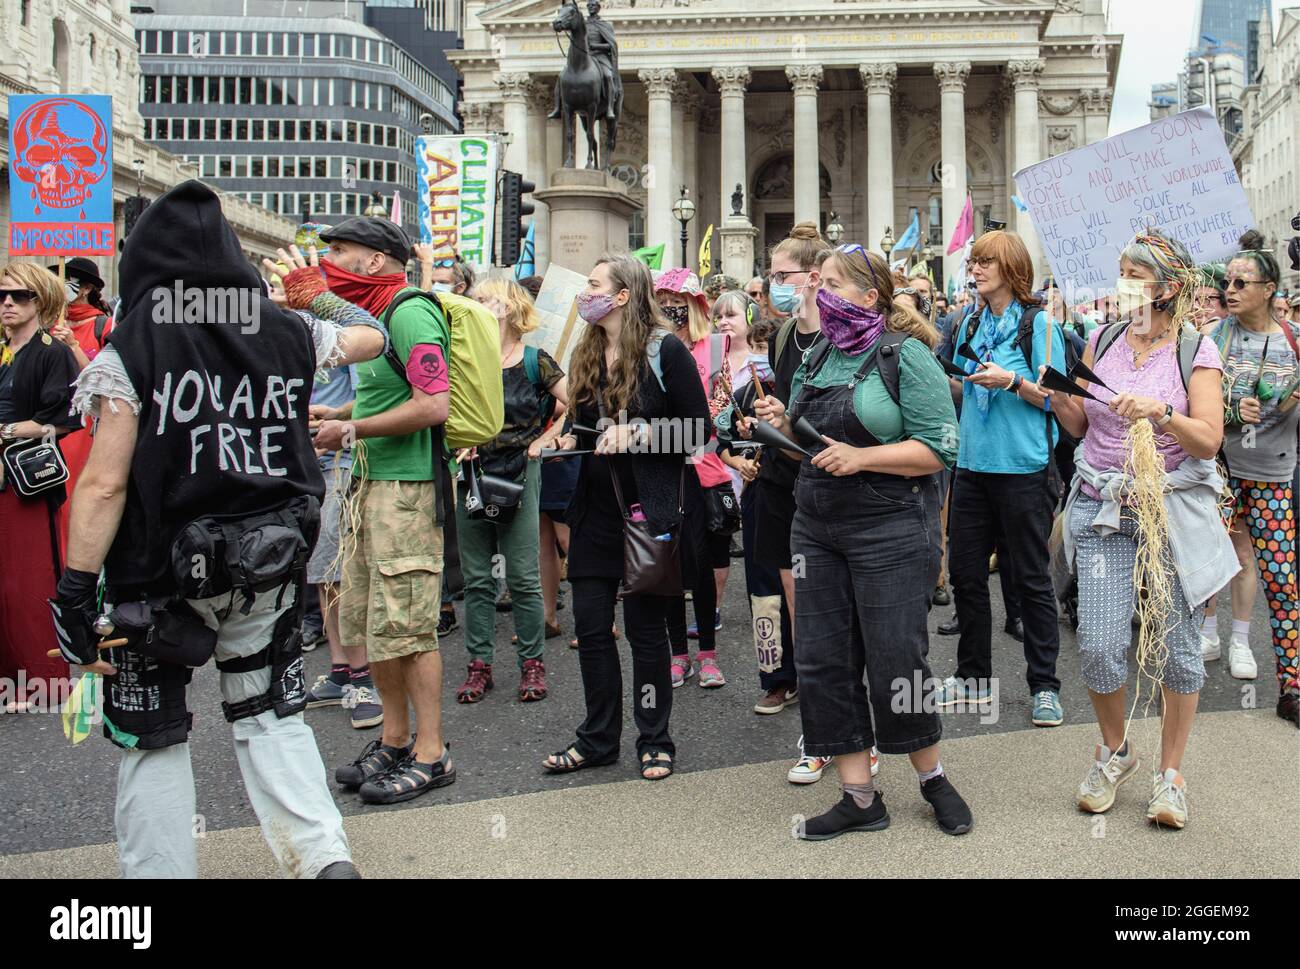 Inghilterra, Londra, Extinction Rebellion manifestanti al di fuori della Banca d'Inghilterra. Foto Stock